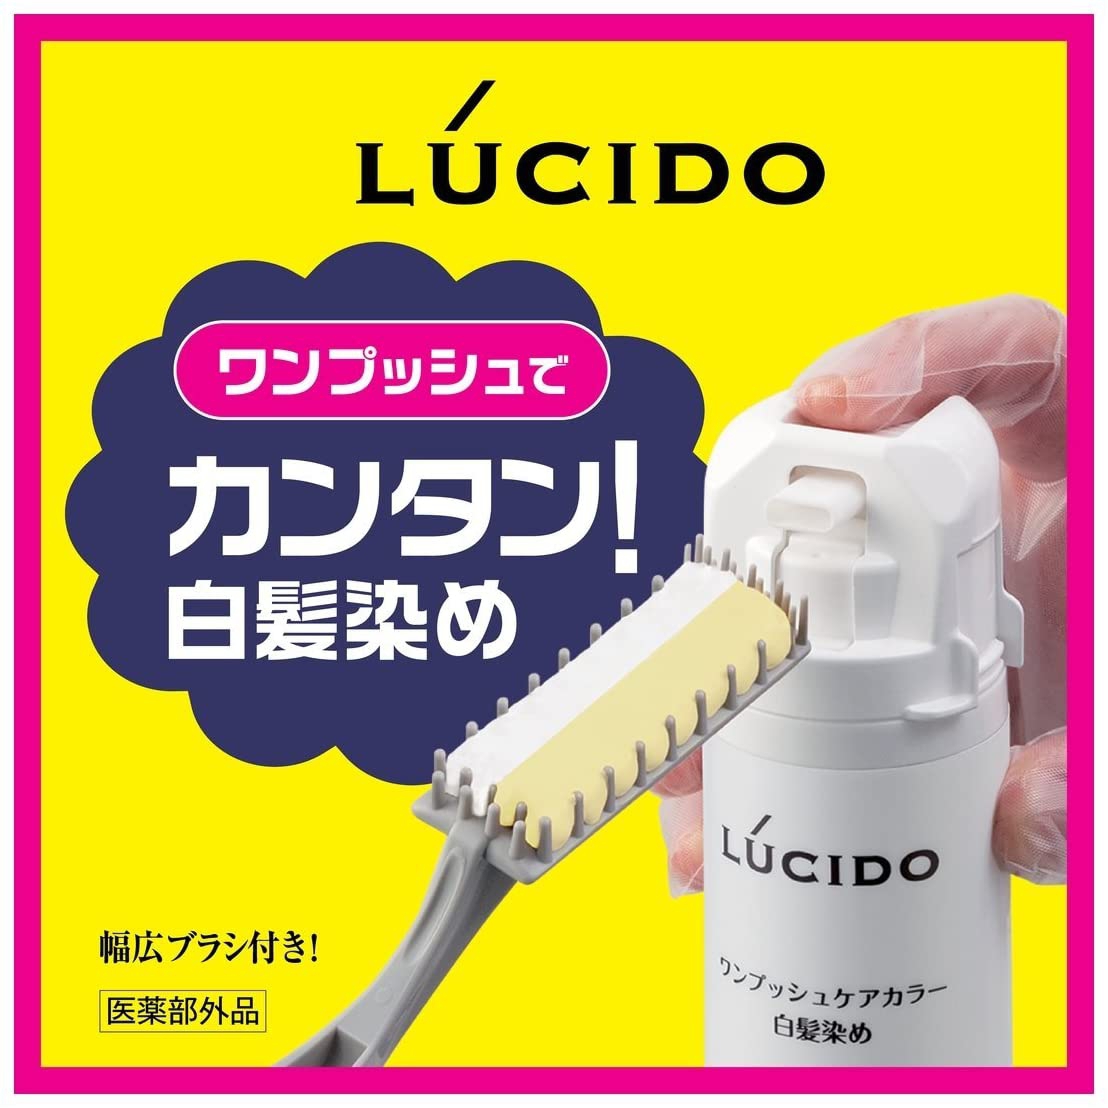 LUCIDO(ルシード) ワンプッシュケアカラーの商品画像8 